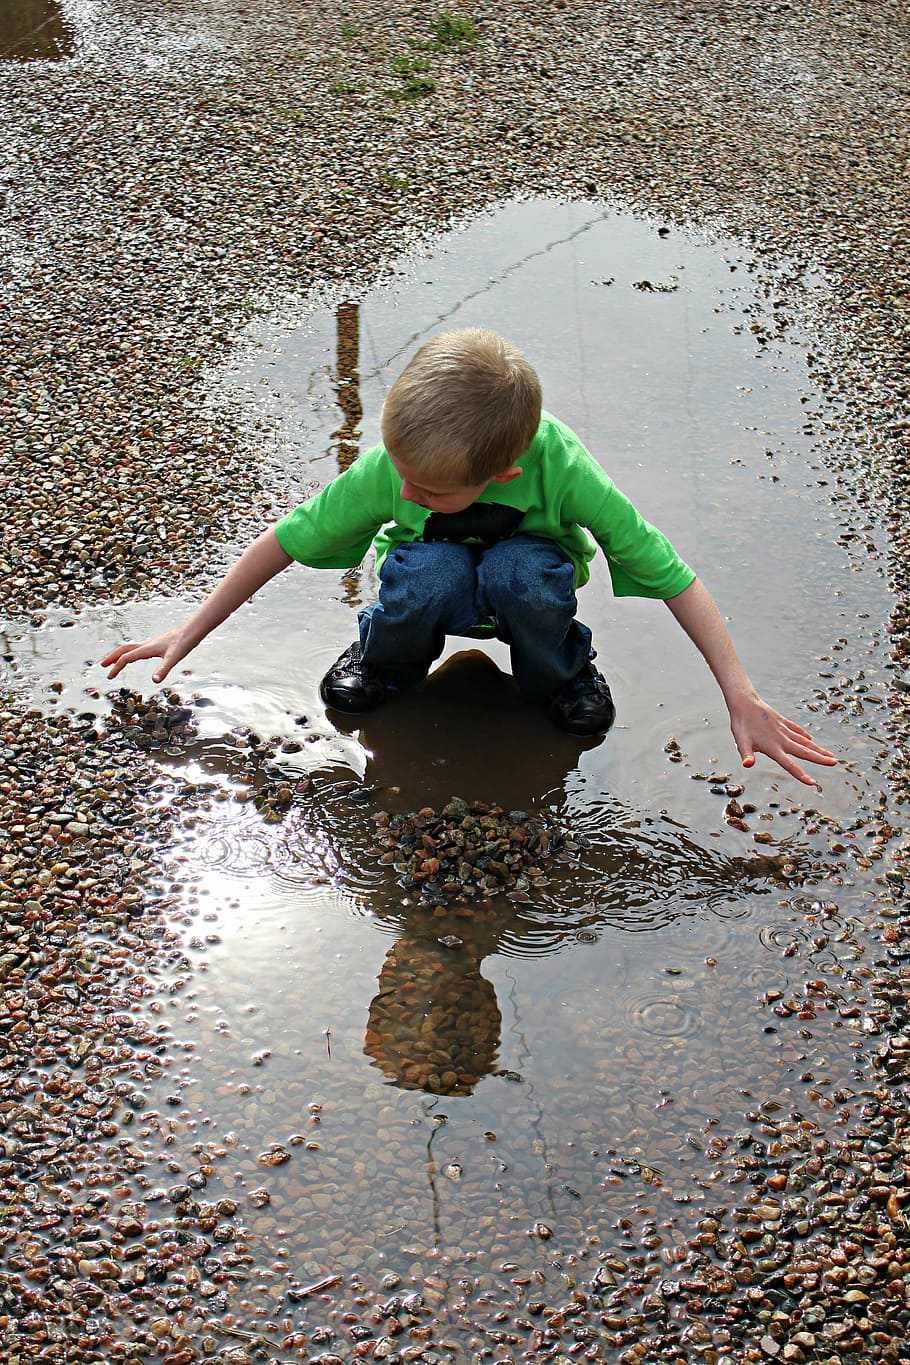 poça, reflexão, água, chuva, pedras, sujo, menino, caucasiano, infância, criança